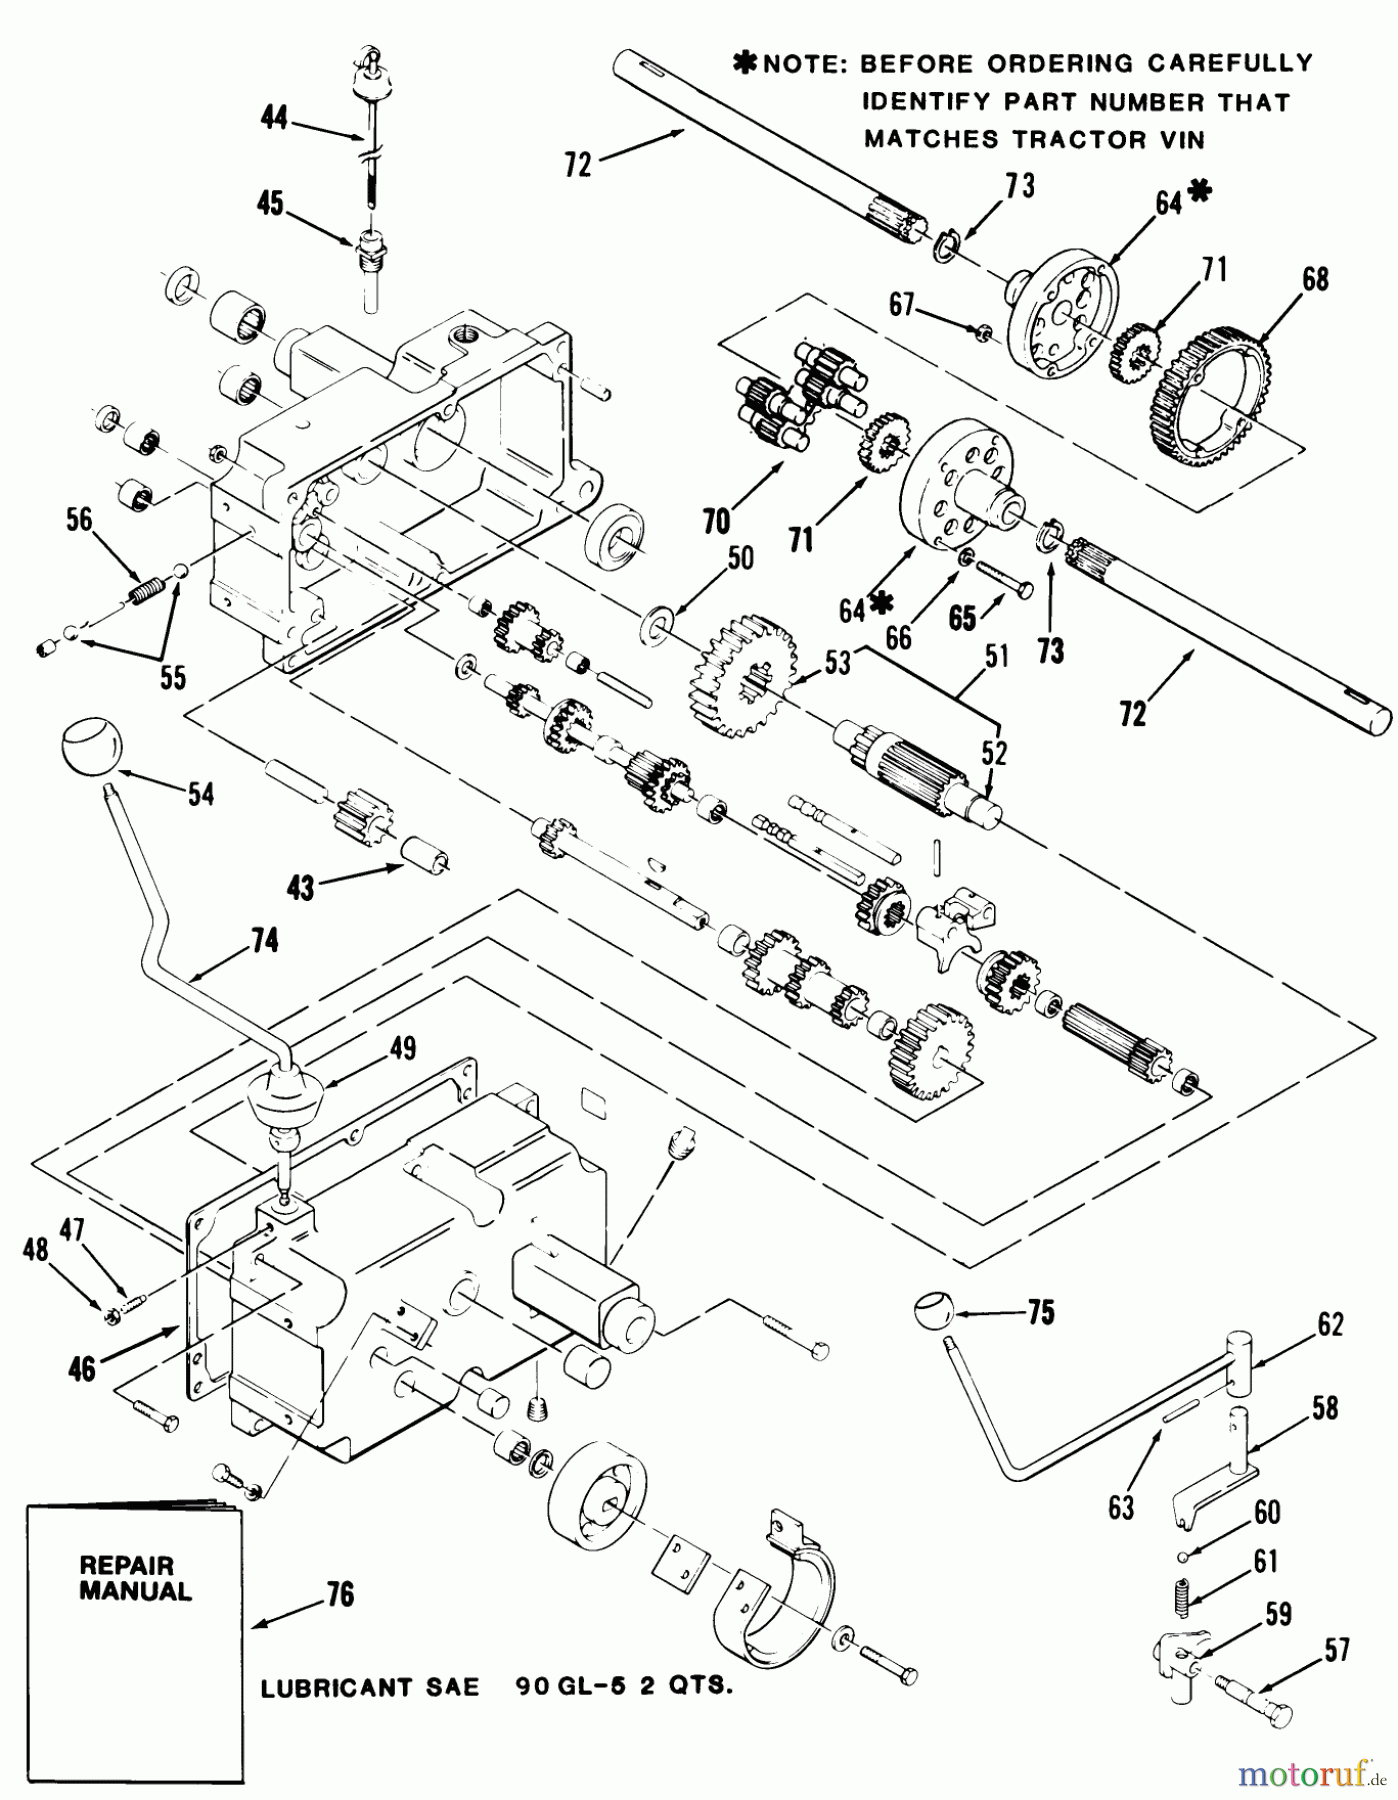  Toro Neu Mowers, Lawn & Garden Tractor Seite 1 31-16K802 (416-8) - Toro 416-8 Garden Tractor, 1986 MECHANICAL TRANSMISSION-8-SPEED #2